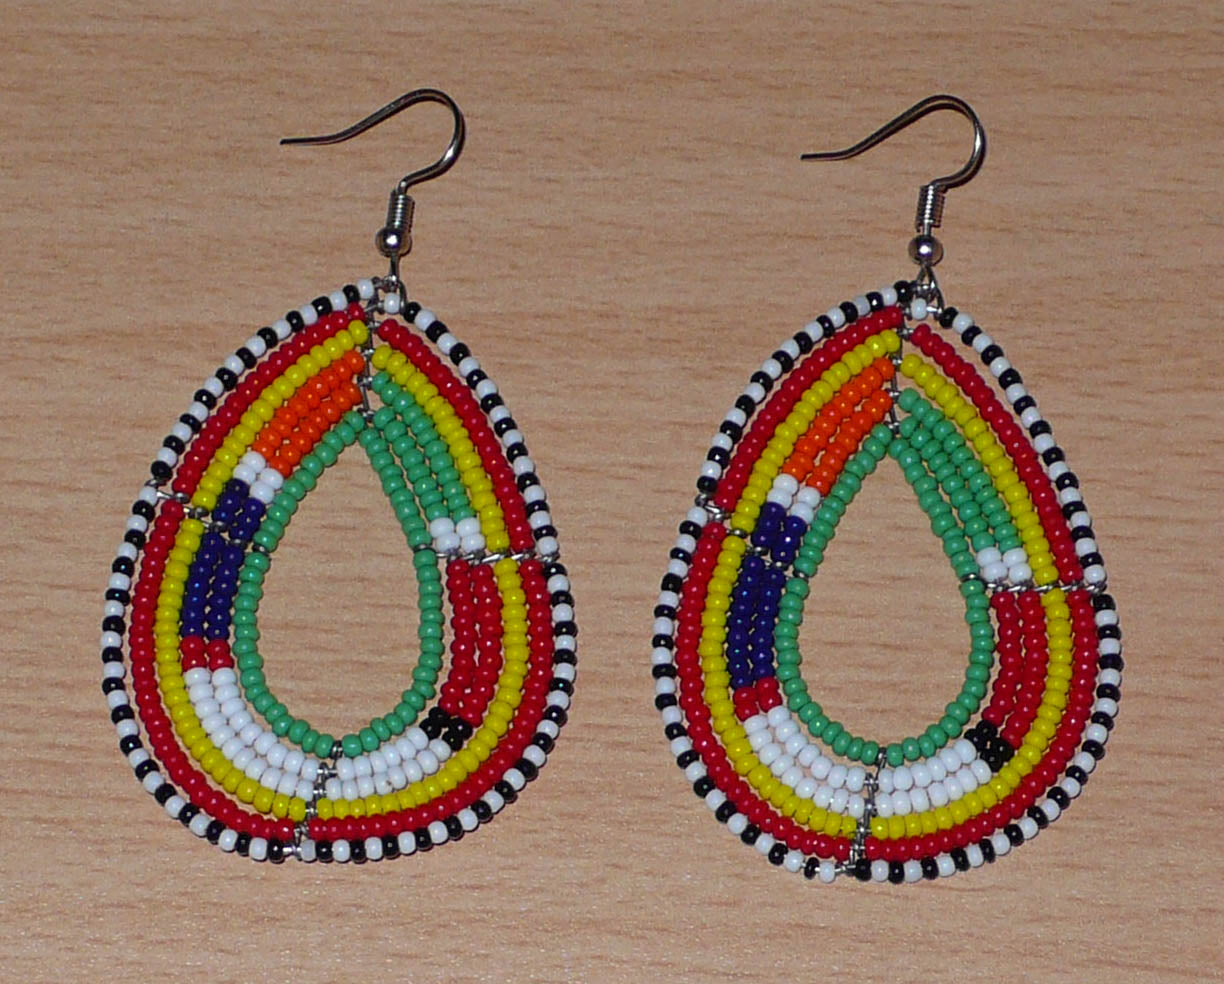 Boucles d'oreilles africaines de tradition Massai en forme de gouttes faites de perles de rocaille vertes et multicolores. Elles mesurent 7,5 cm de long et 4 cm de large.